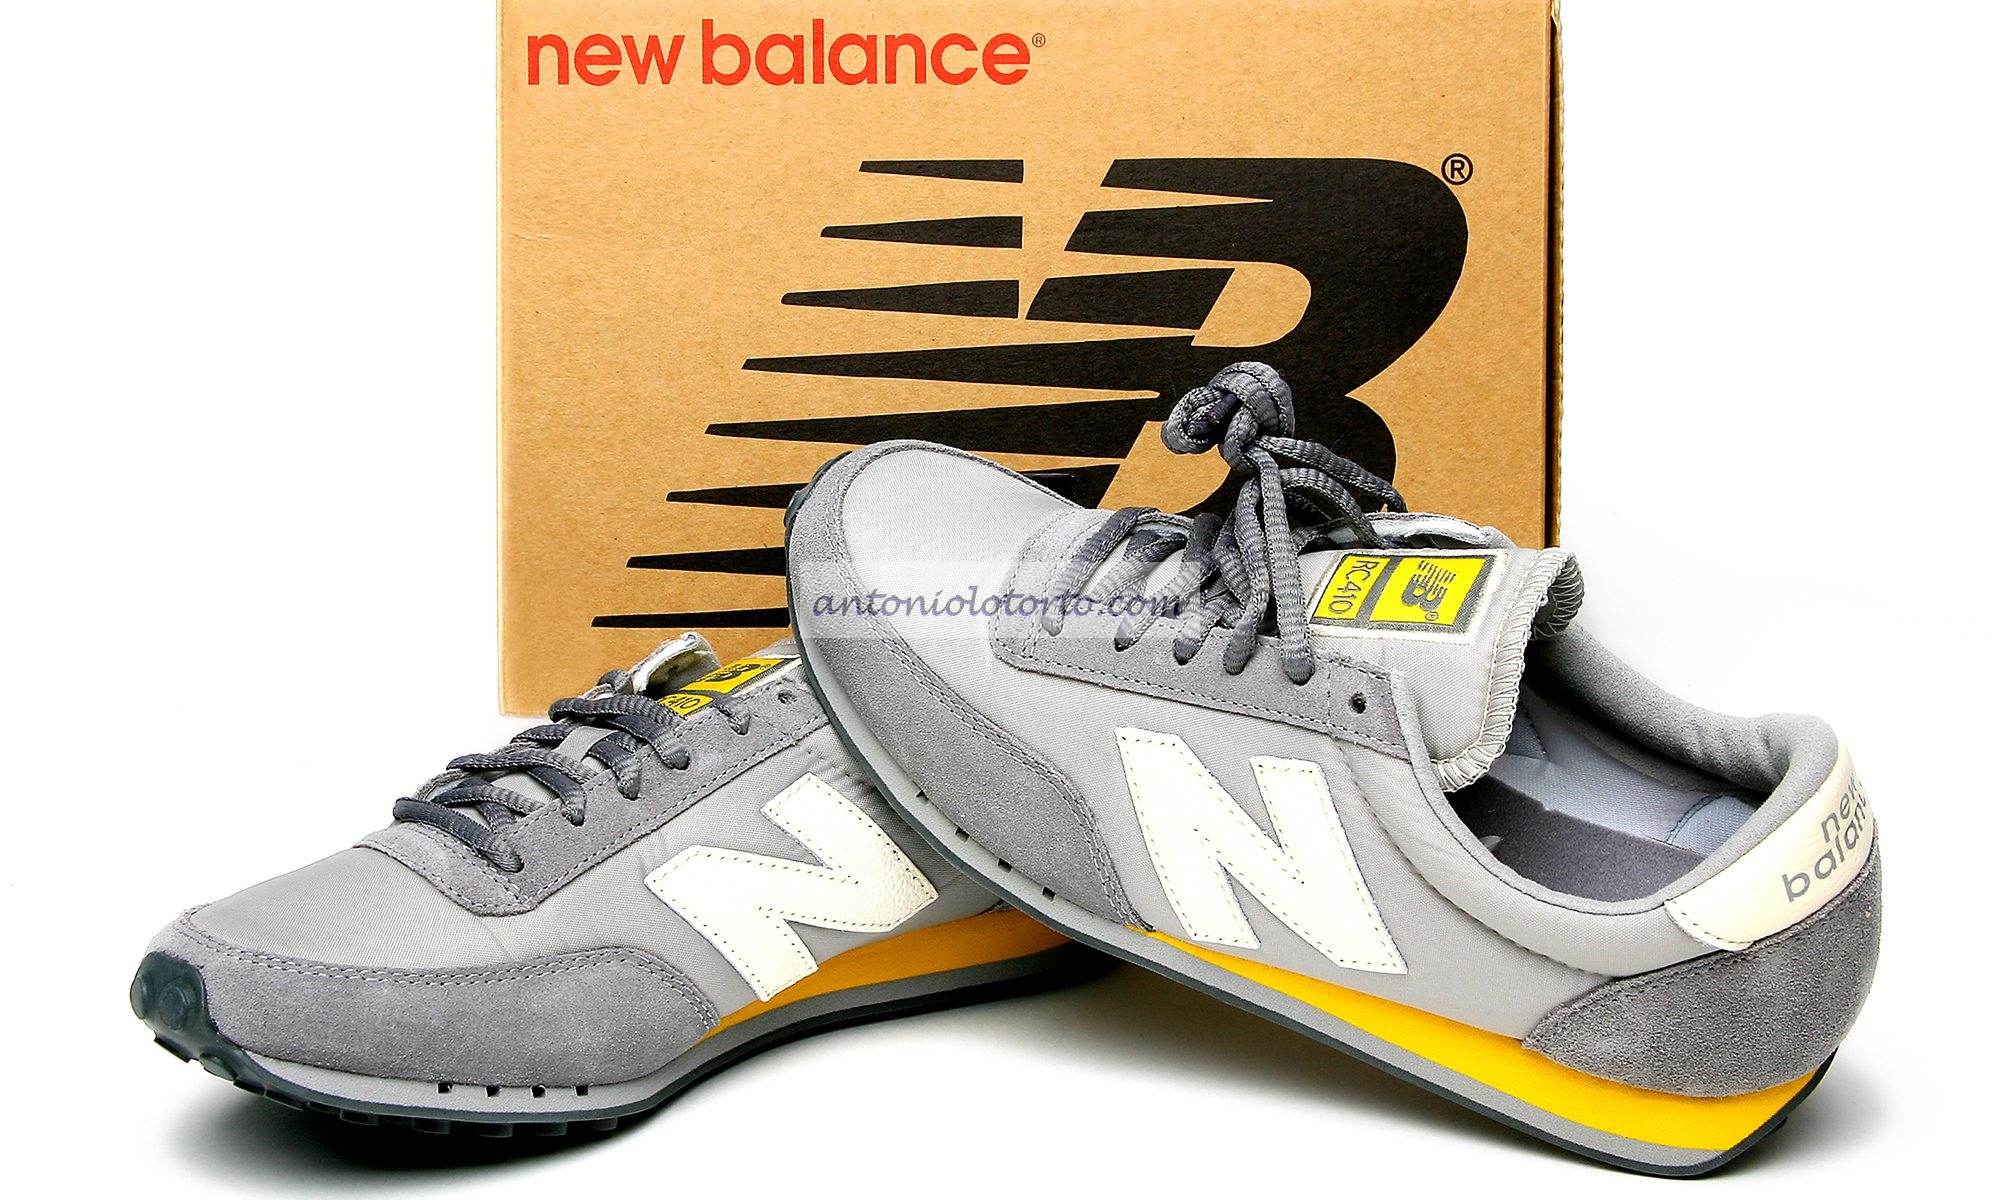 scarpe new balance mod 410-foto-pubblicità-cataloghi-still-life-antoniolotorto.com